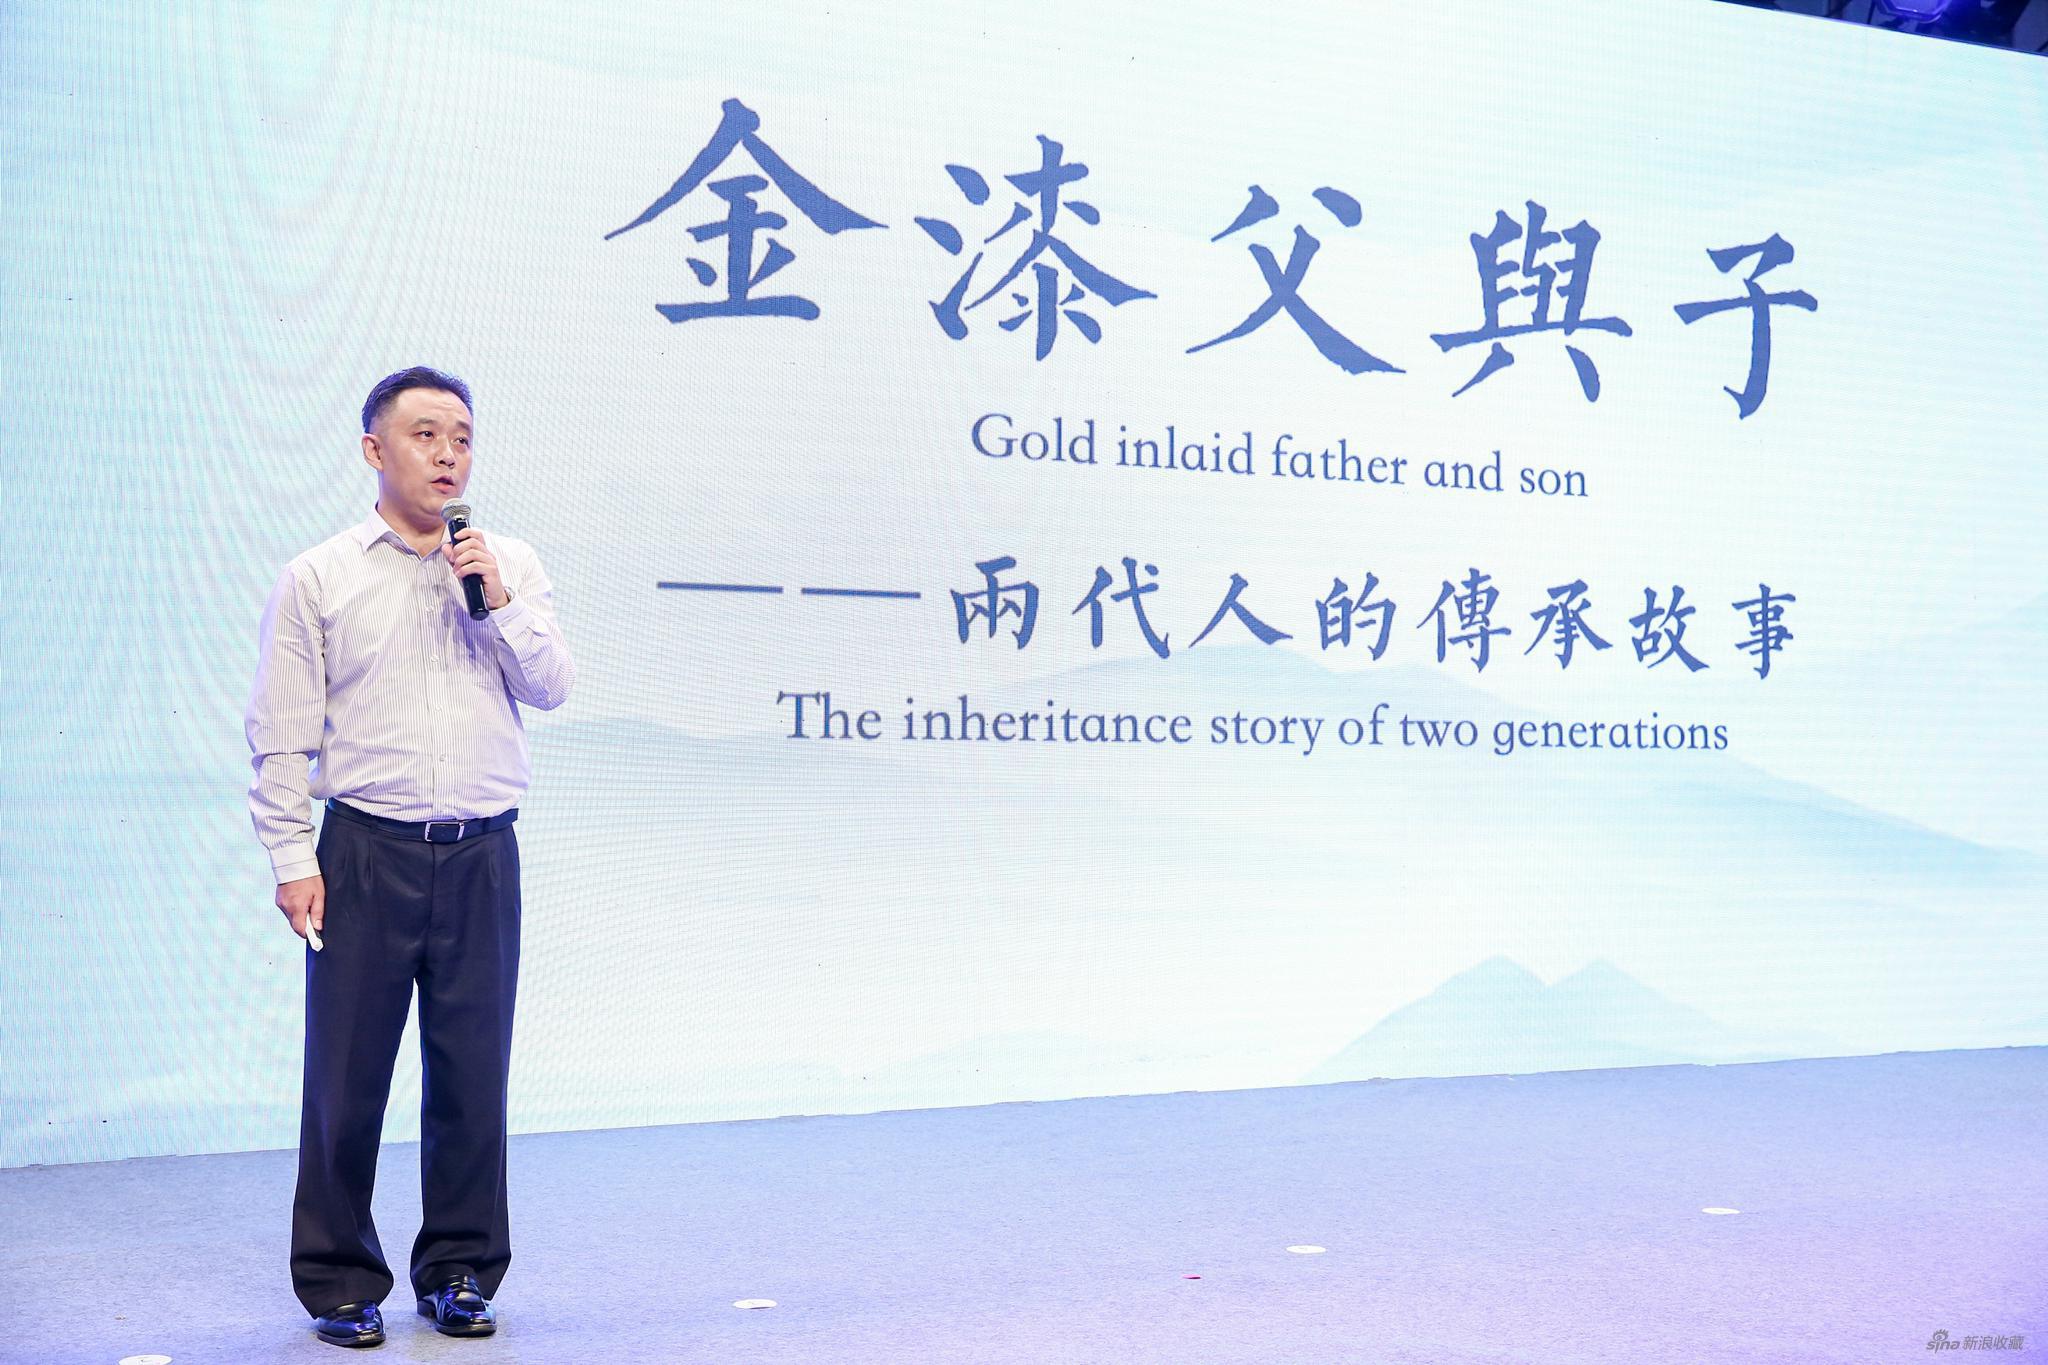 北京金漆镶嵌有限责任公司董事长柏群演讲《金漆父与子》